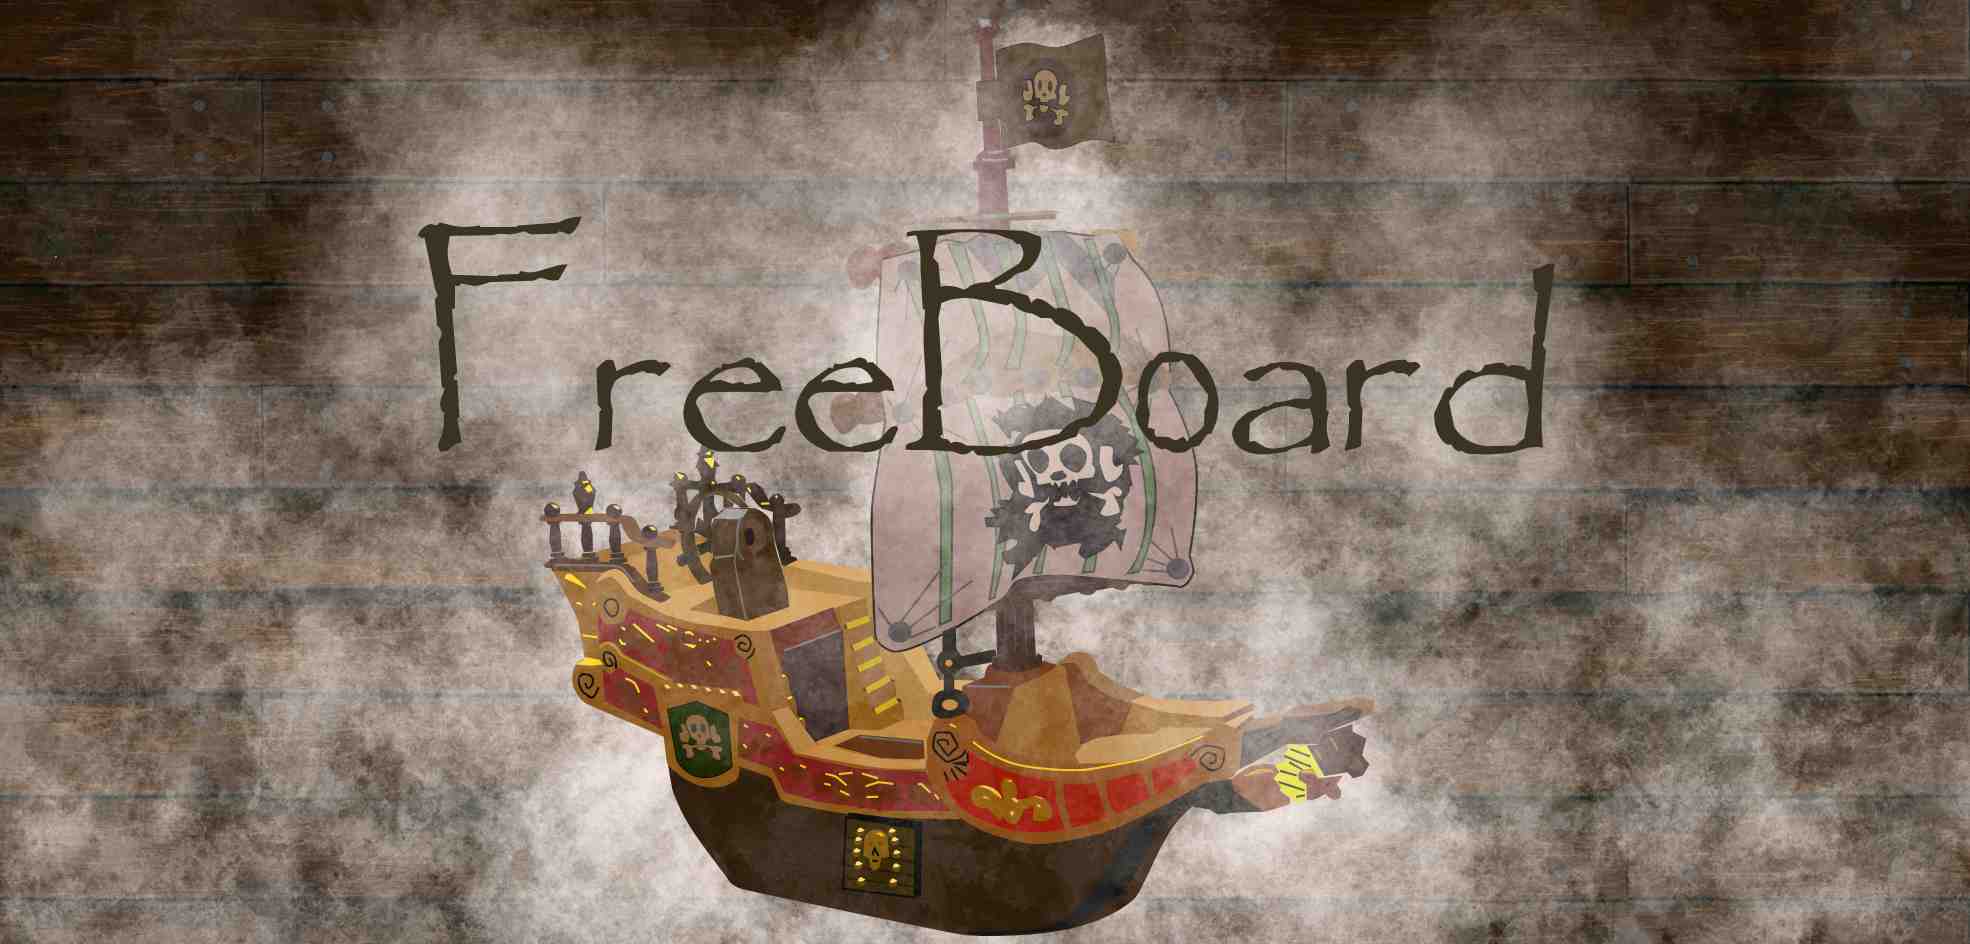 freeboard